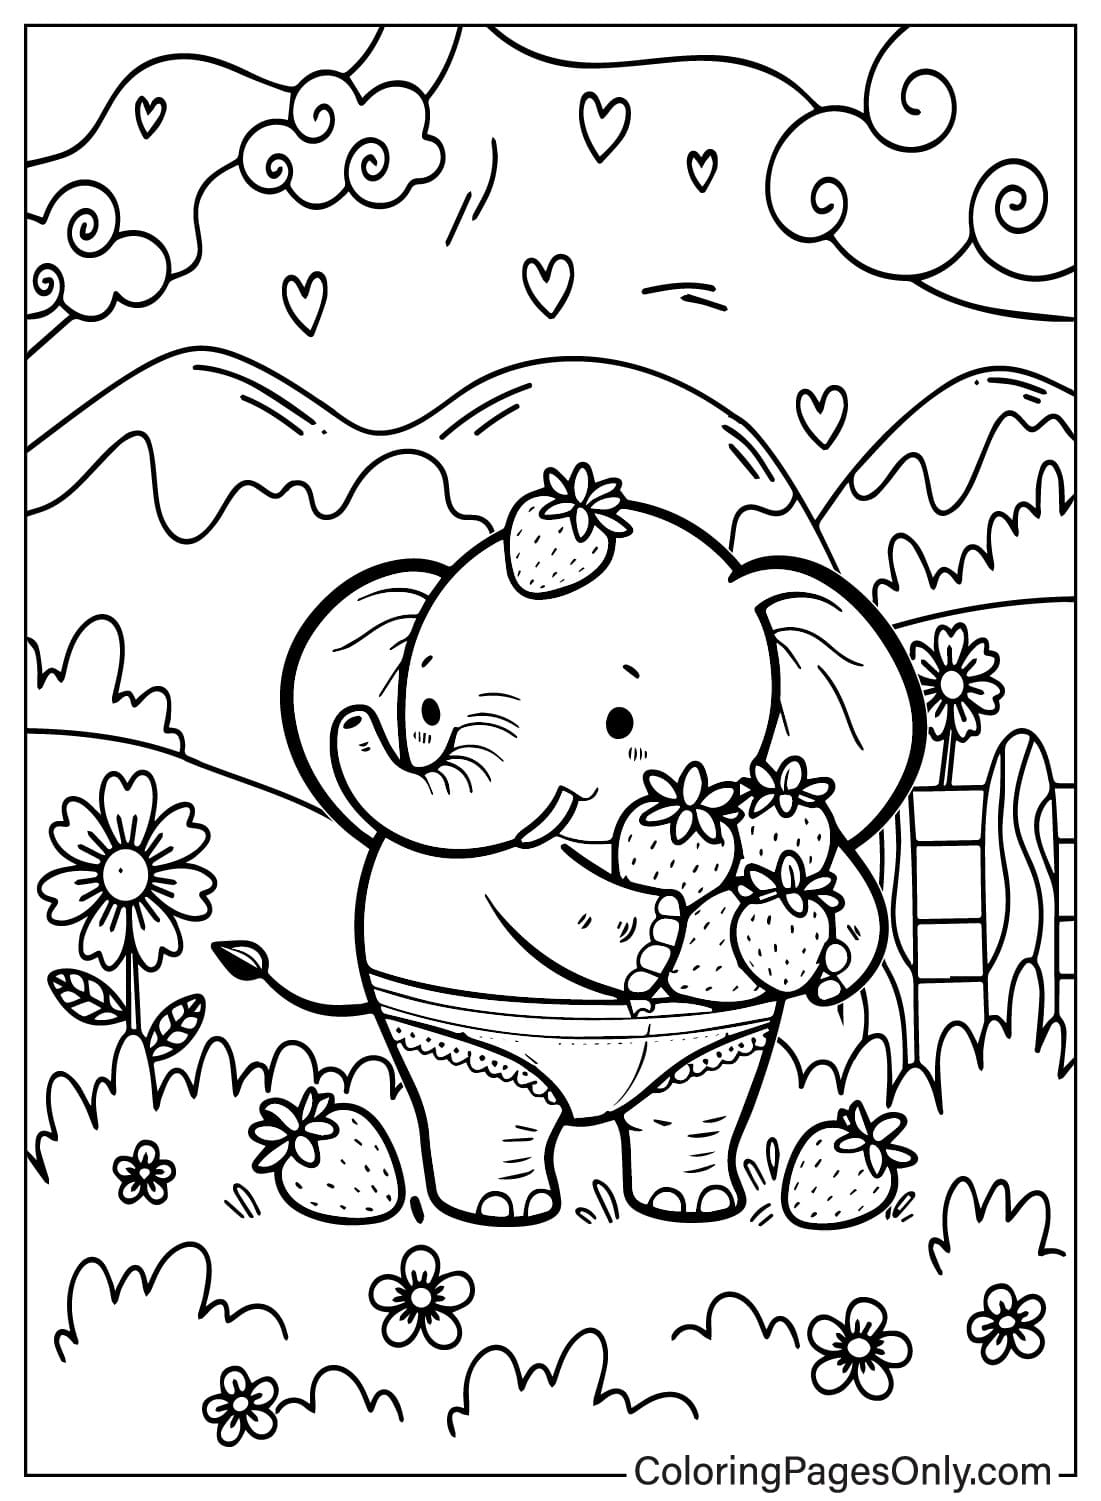 Página para colorear de Elefante de fresa en el jardín de flores de Elefante de fresa